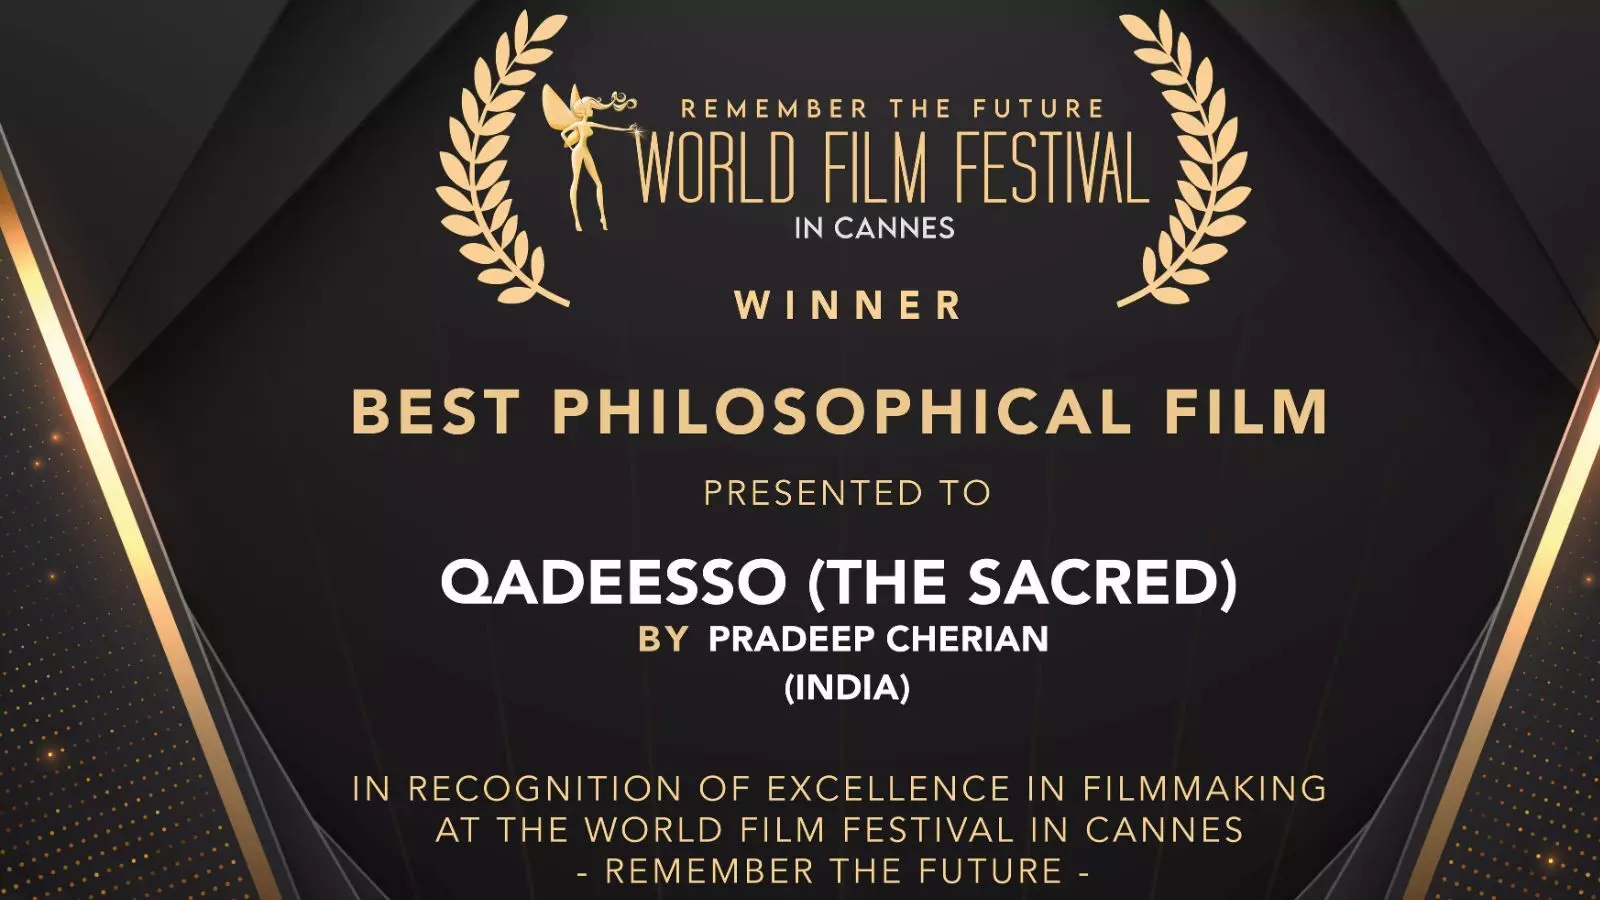 कान्स विश्व फिल्म महोत्सव में देश ने जीता ‘बेस्ट फिलॉसफी फिल्म’ का पुरस्कार